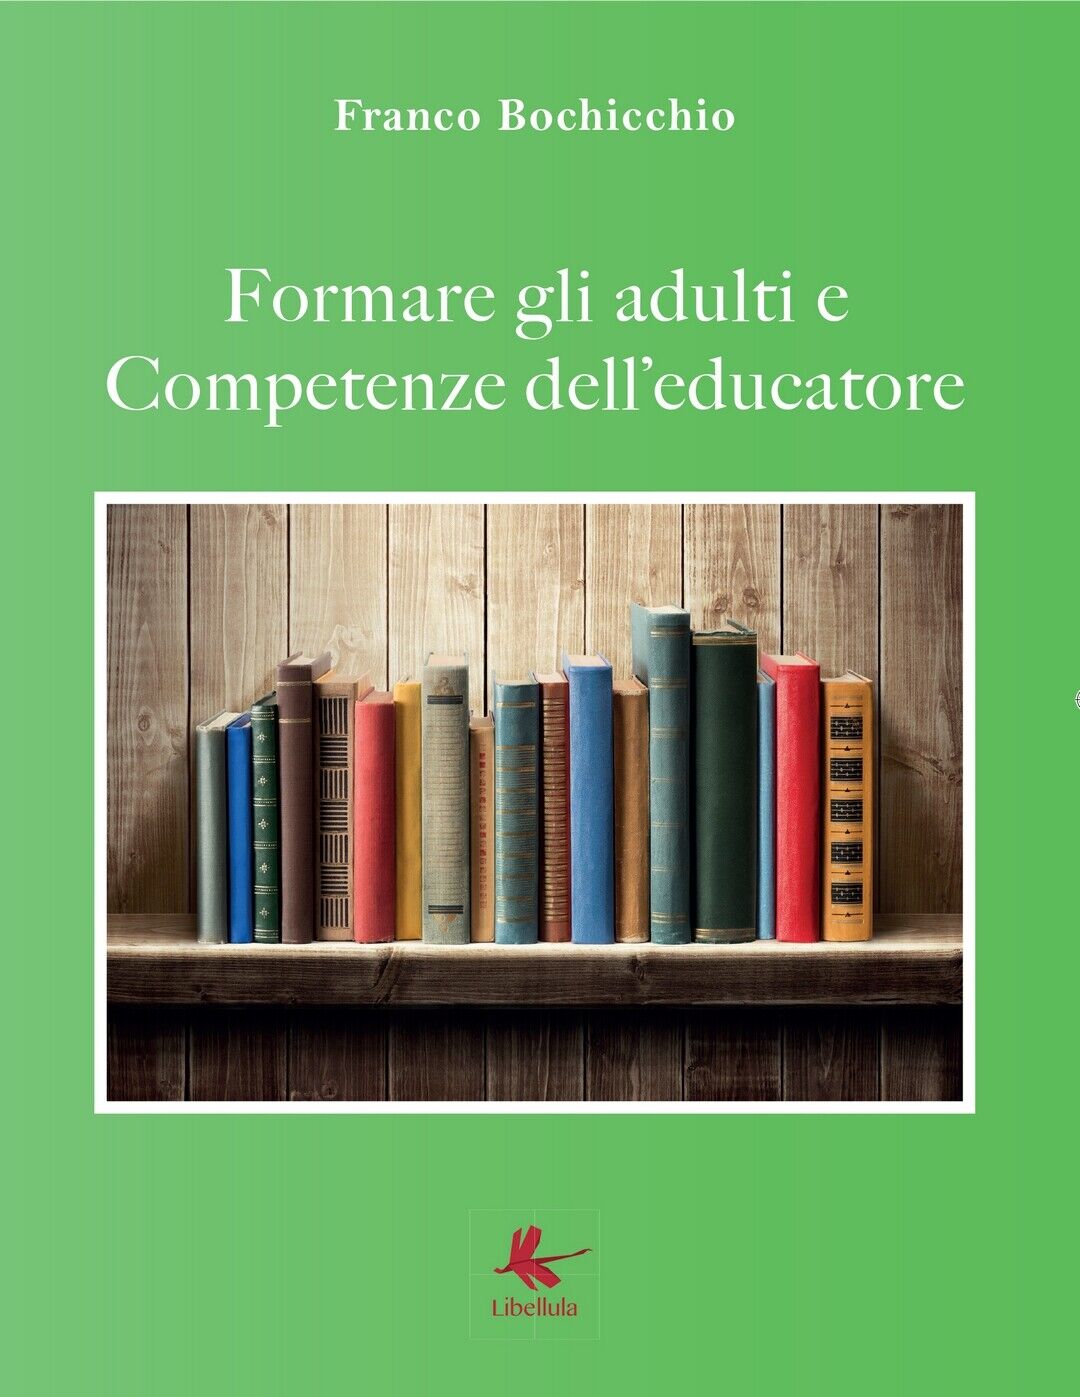 Formare gli adulti e competenze delL'educatore, Franco Bochicchio,  2017